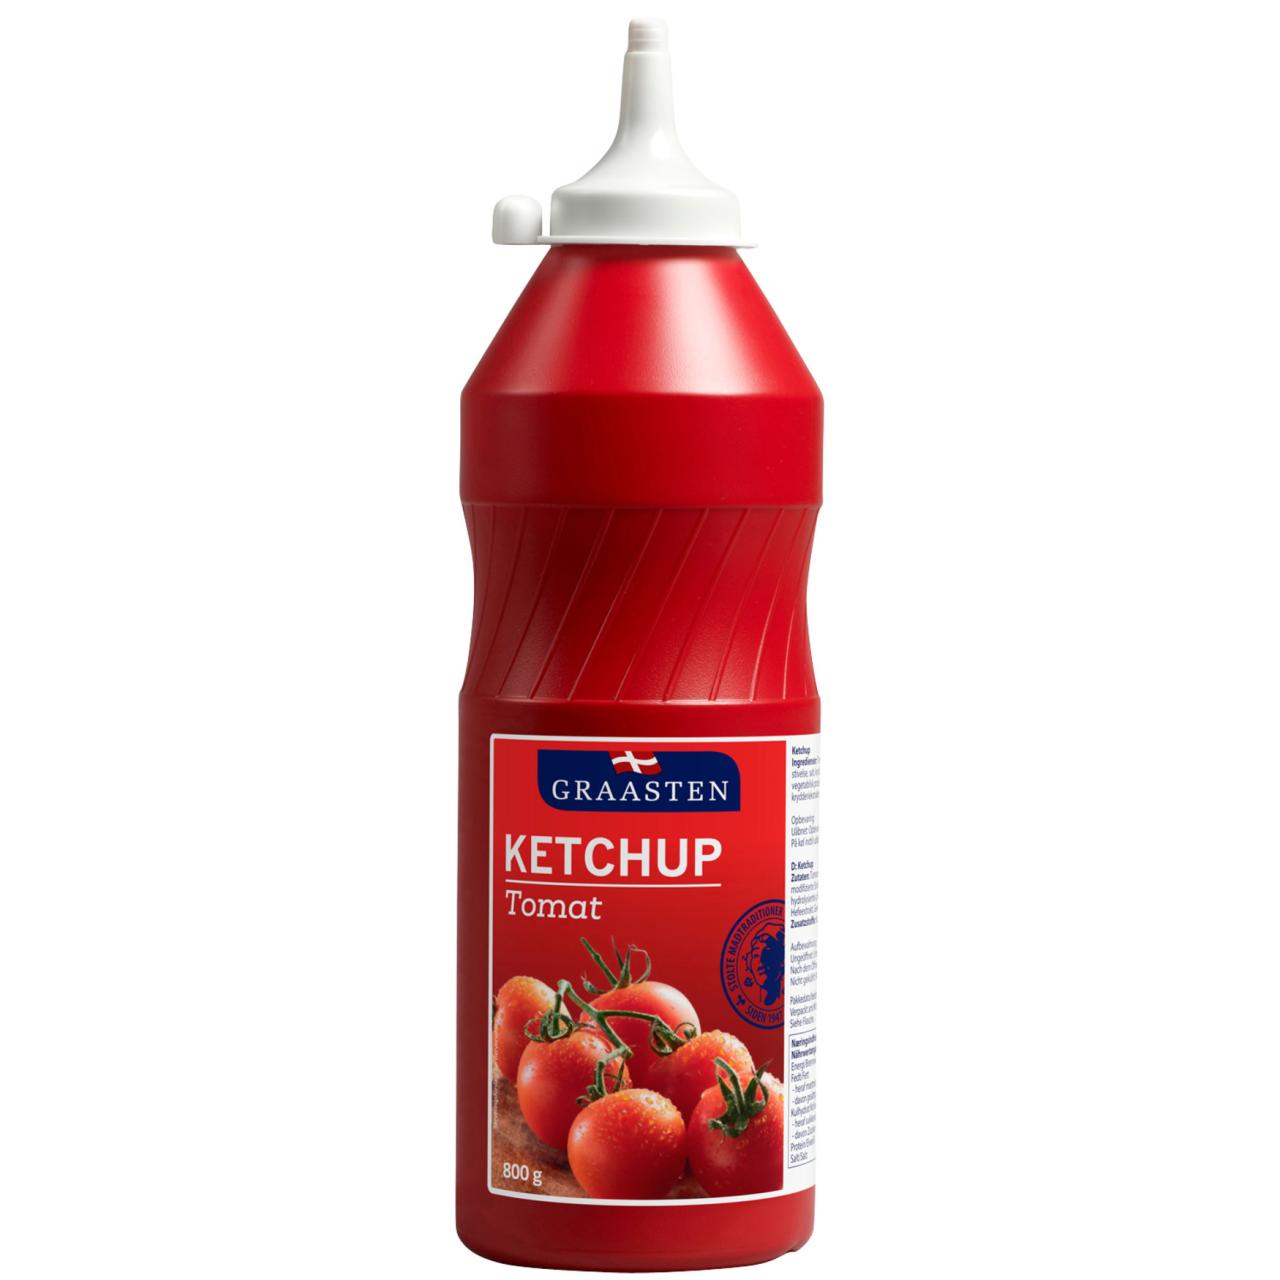 Graasten Ketchup 800g